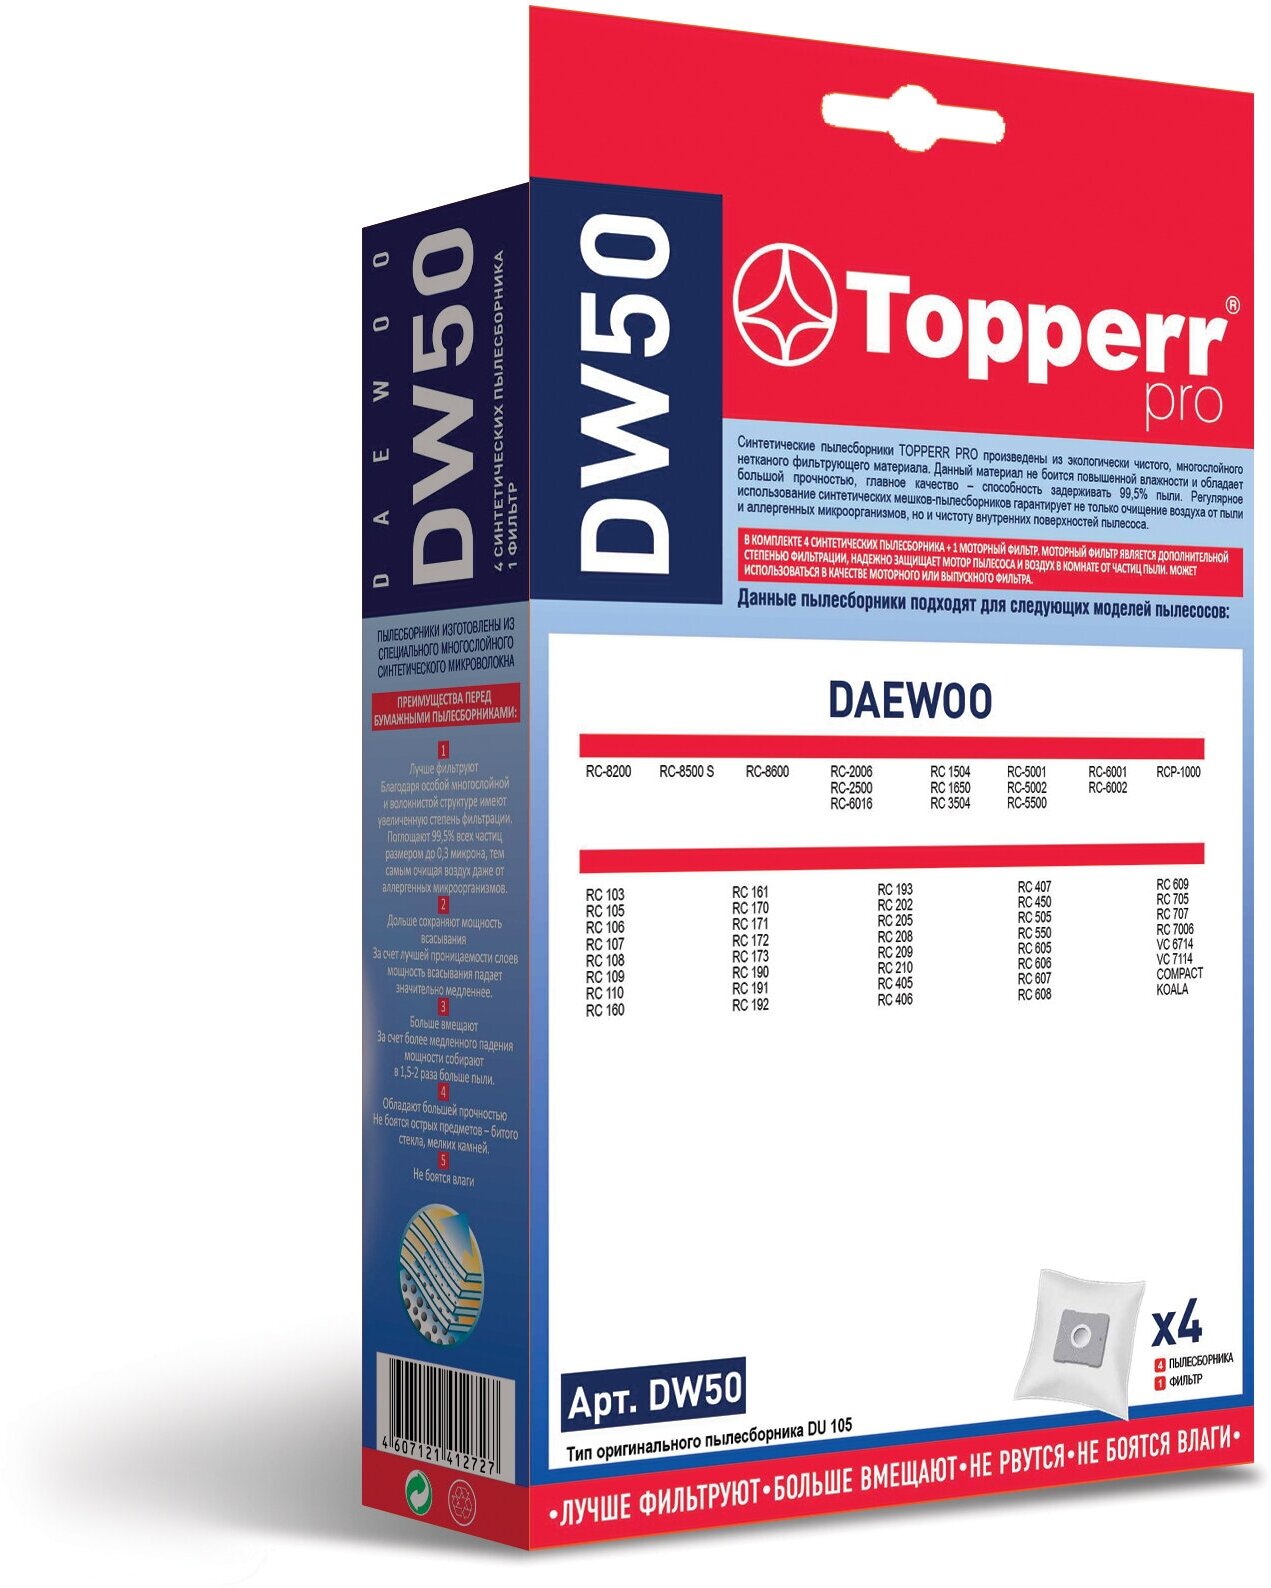 Topperr Фильтр для пылесосов Daewoo, 4 шт, DW 50 - фотография № 13